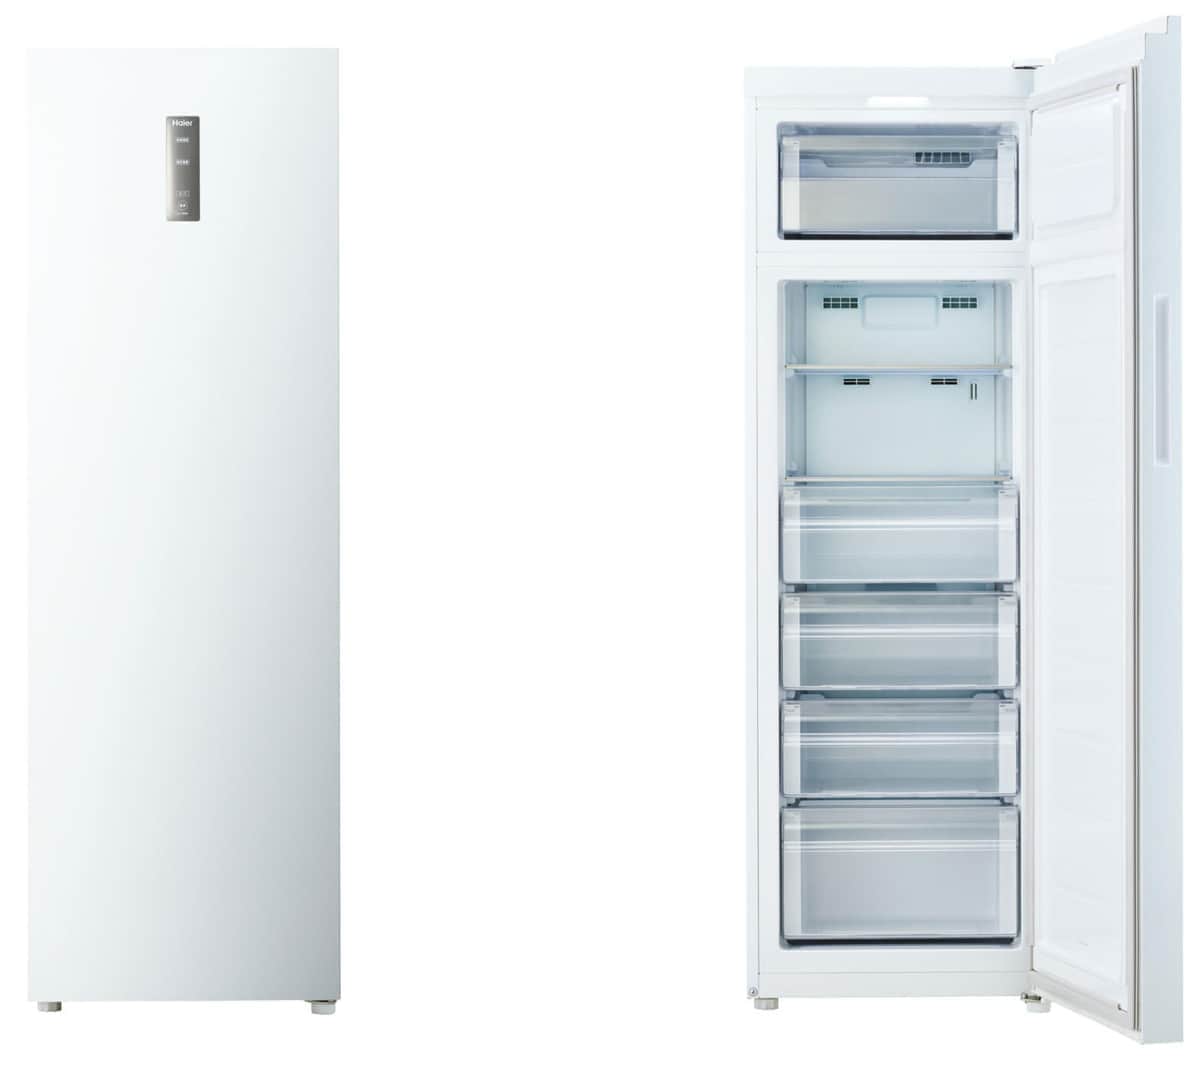 ハイアールの「セカンド冷凍庫」 業界初「2室独立構造」採用: J-CAST 